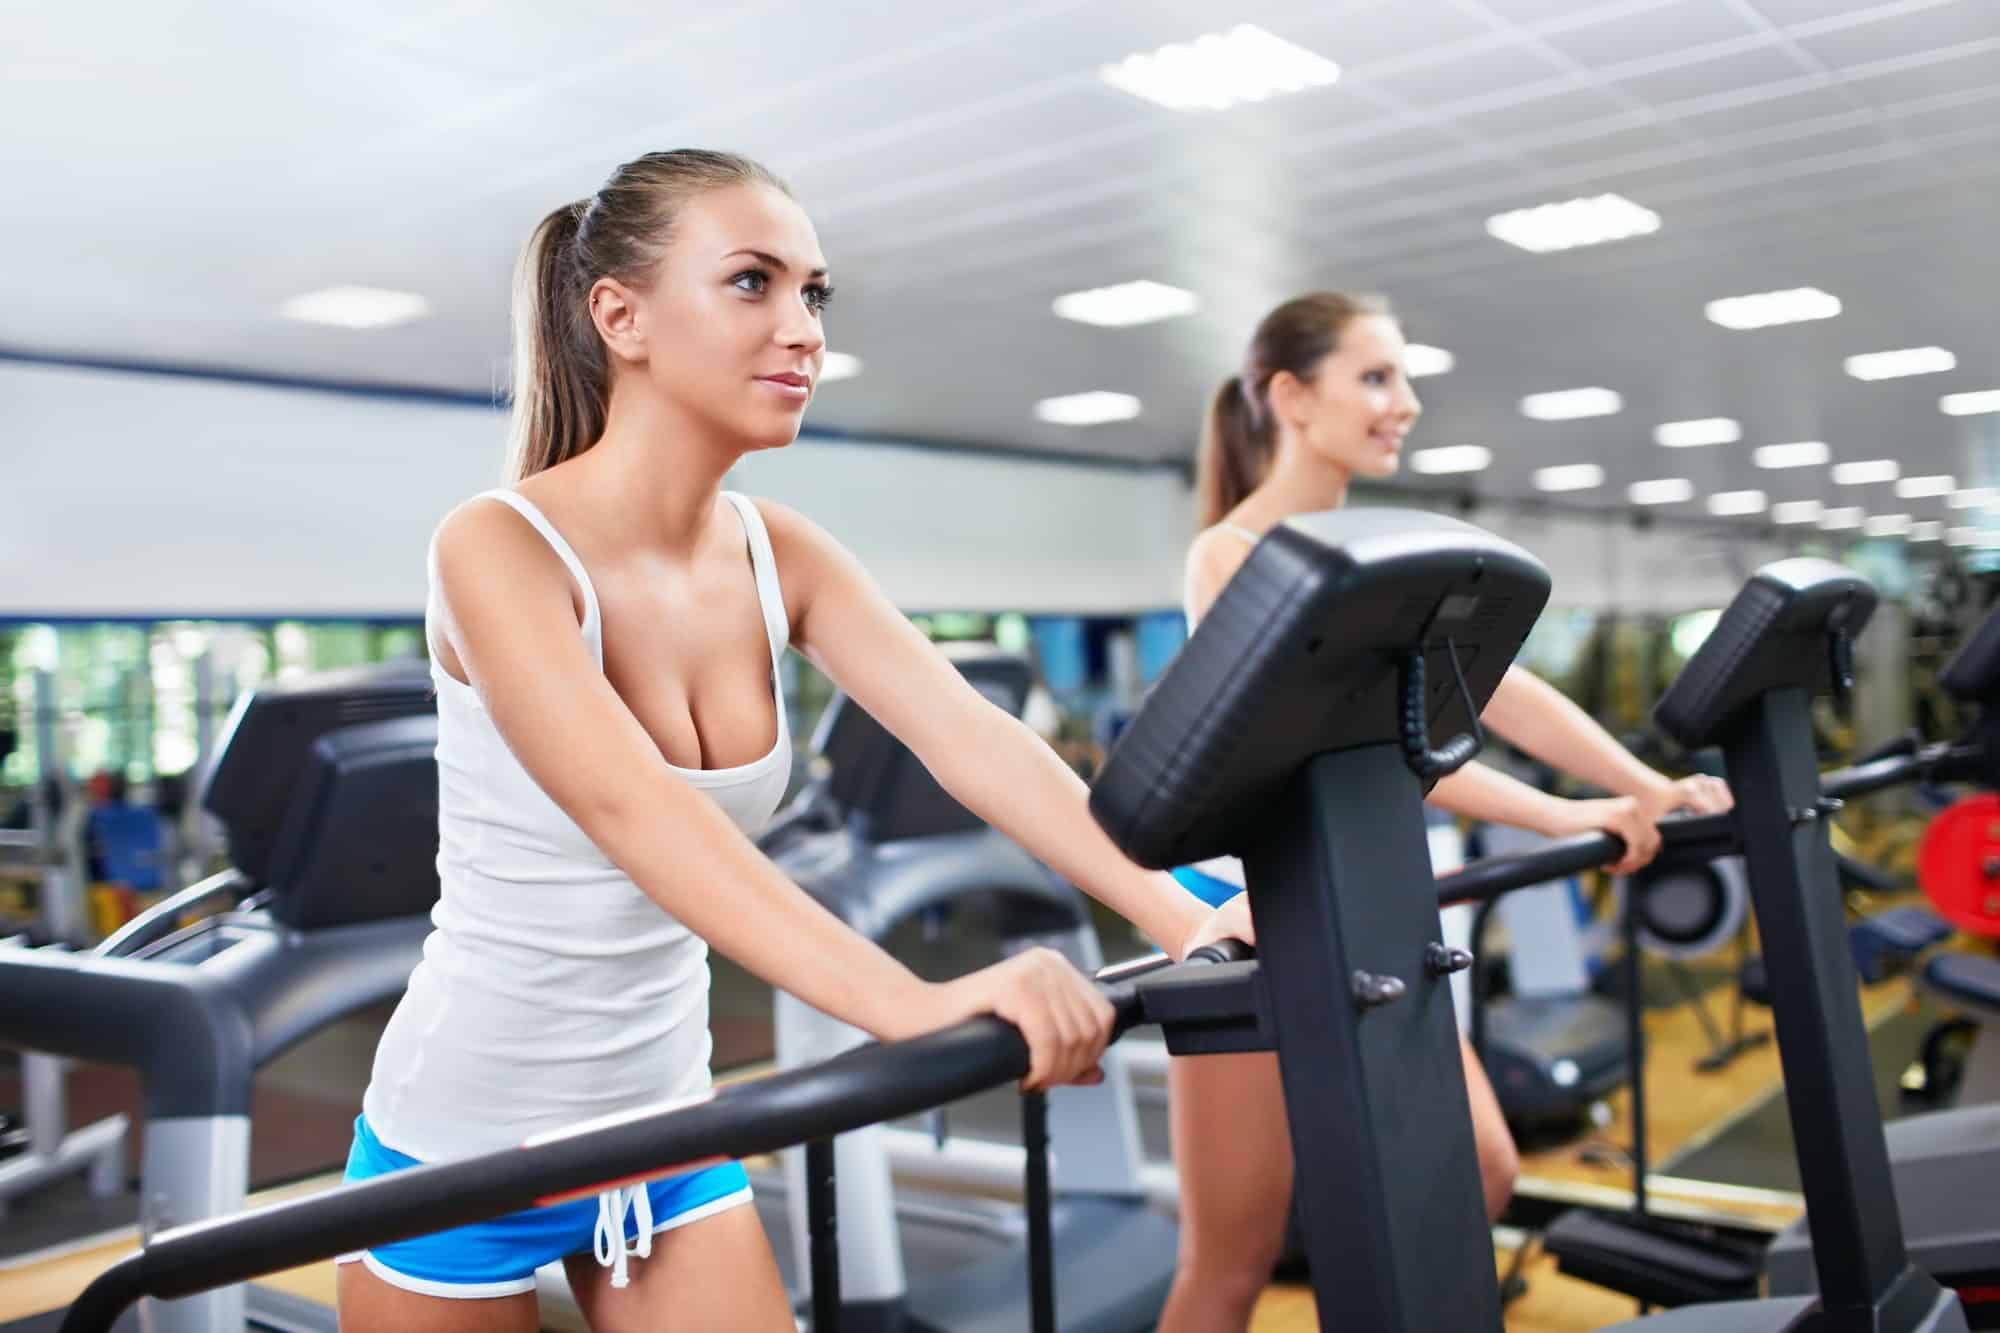 5 exercices simples pour renforcer vos muscles et réduire les cellulites